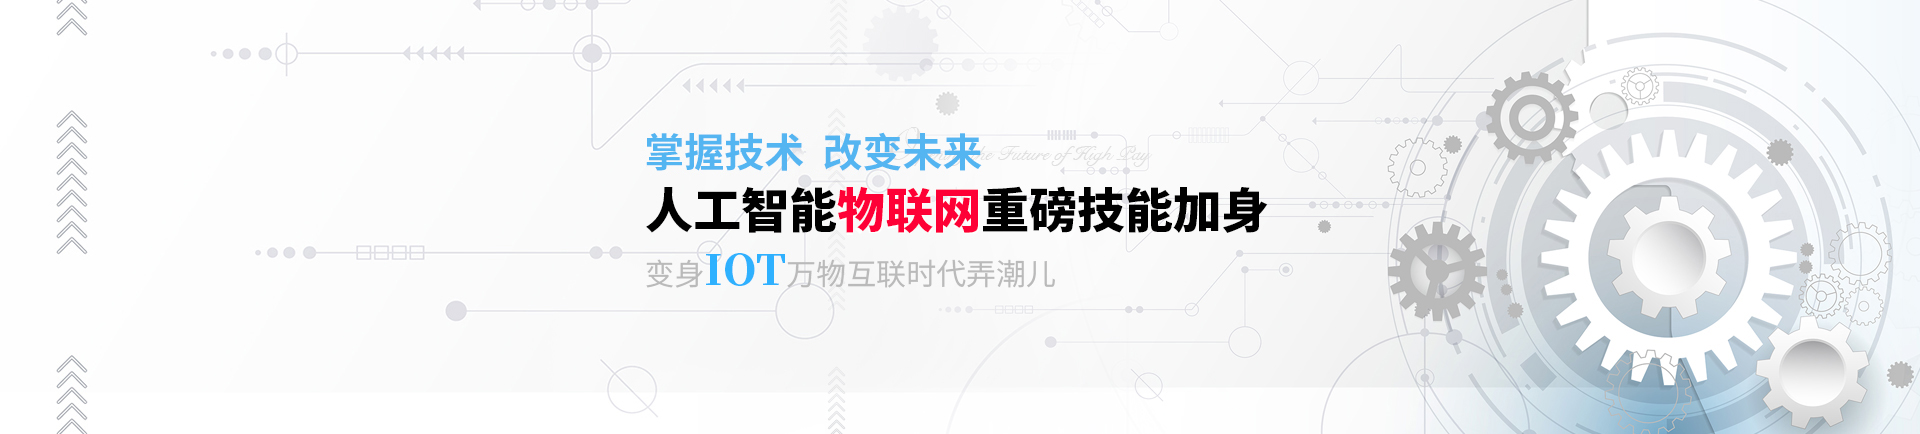 人工智能物联网重磅技能加身 变身IOT万物互联时代弄潮儿-zhengzhou